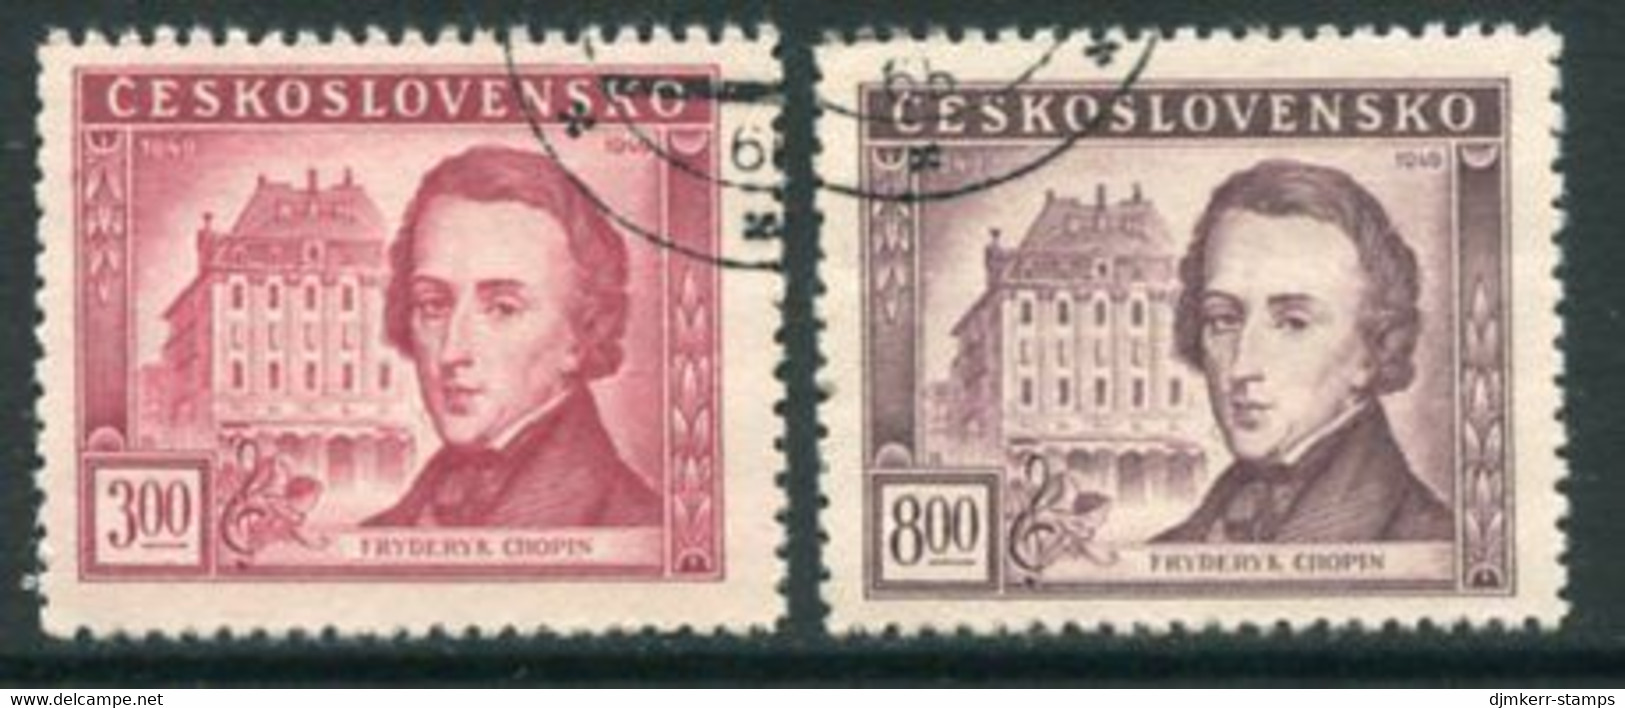 CZECHOSLOVAKIA 1949 Chopin Death Centenary Used.  Michel 581-82 - Gebruikt